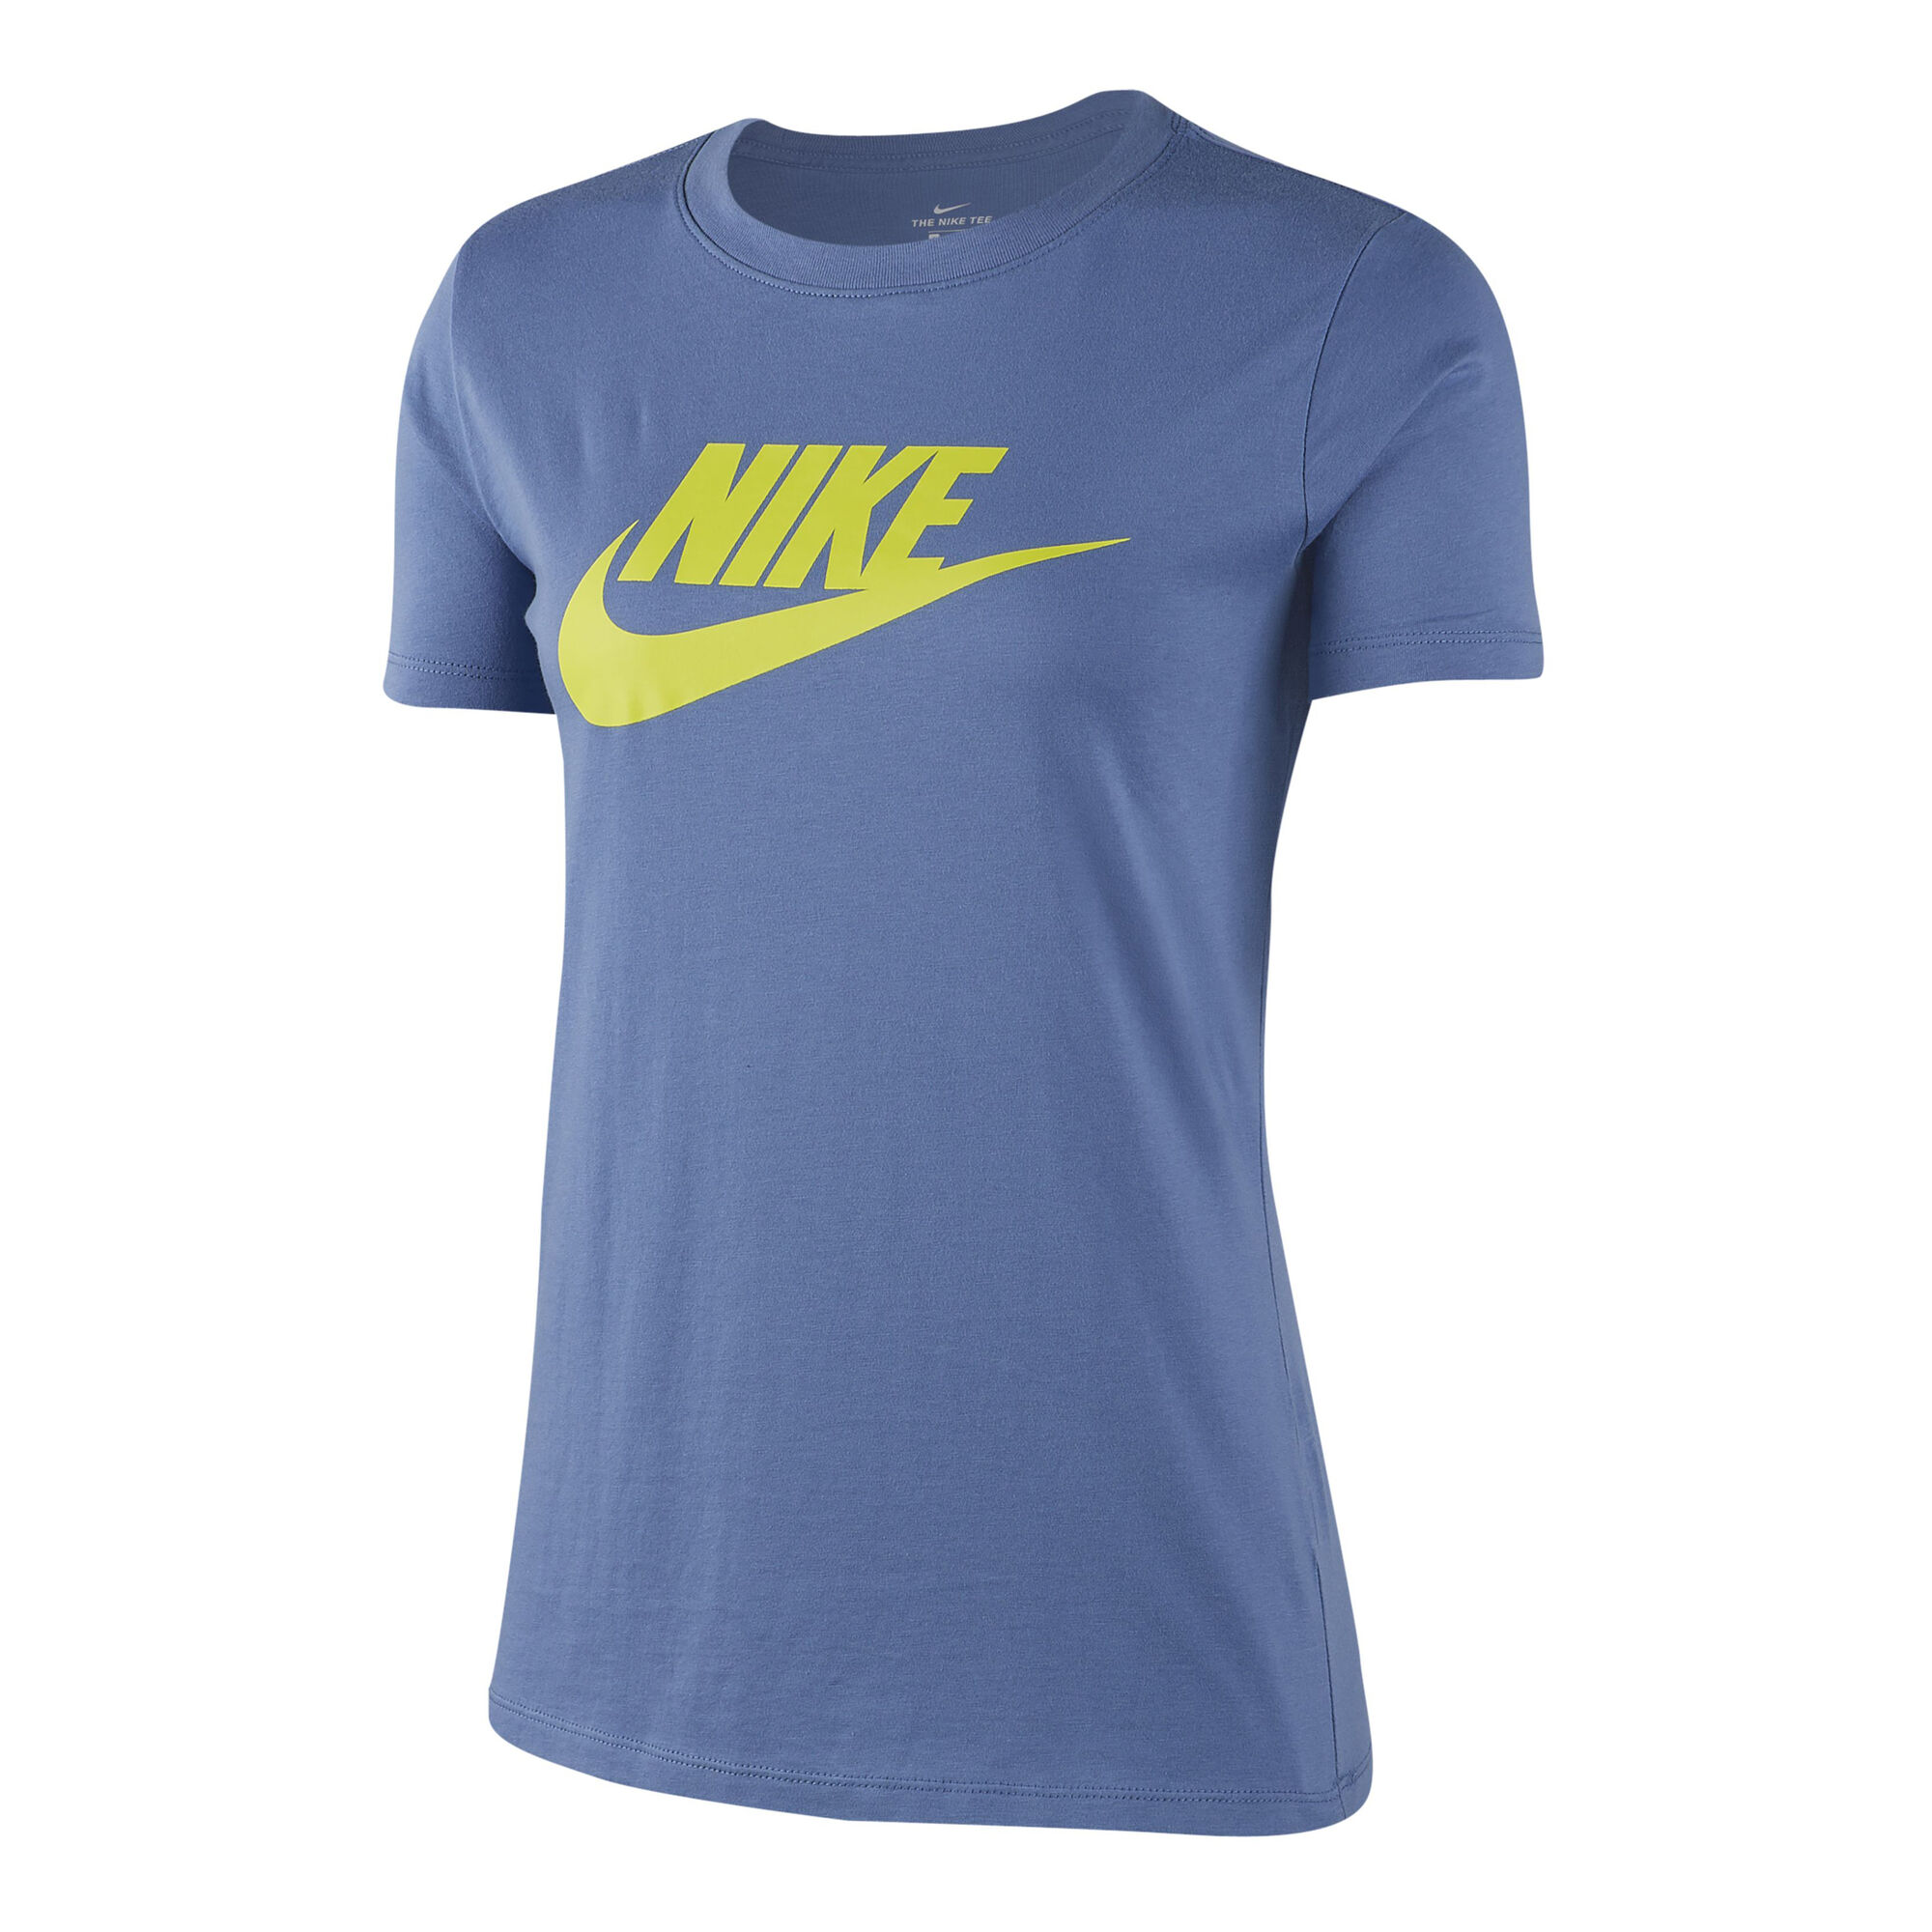 Buy Nike Sportswear T-Shirt Women Light Blue, Lime online | Tennis Point UK